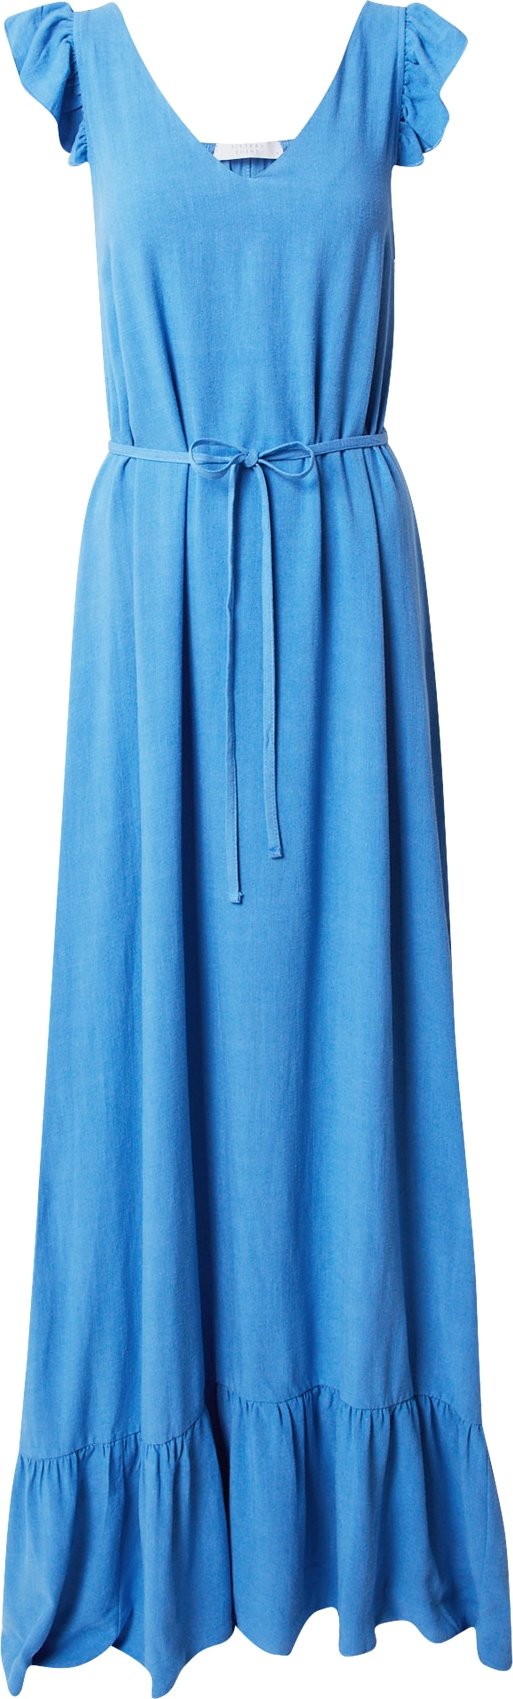 SISTERS POINT Letní šaty 'GULIC' nebeská modř